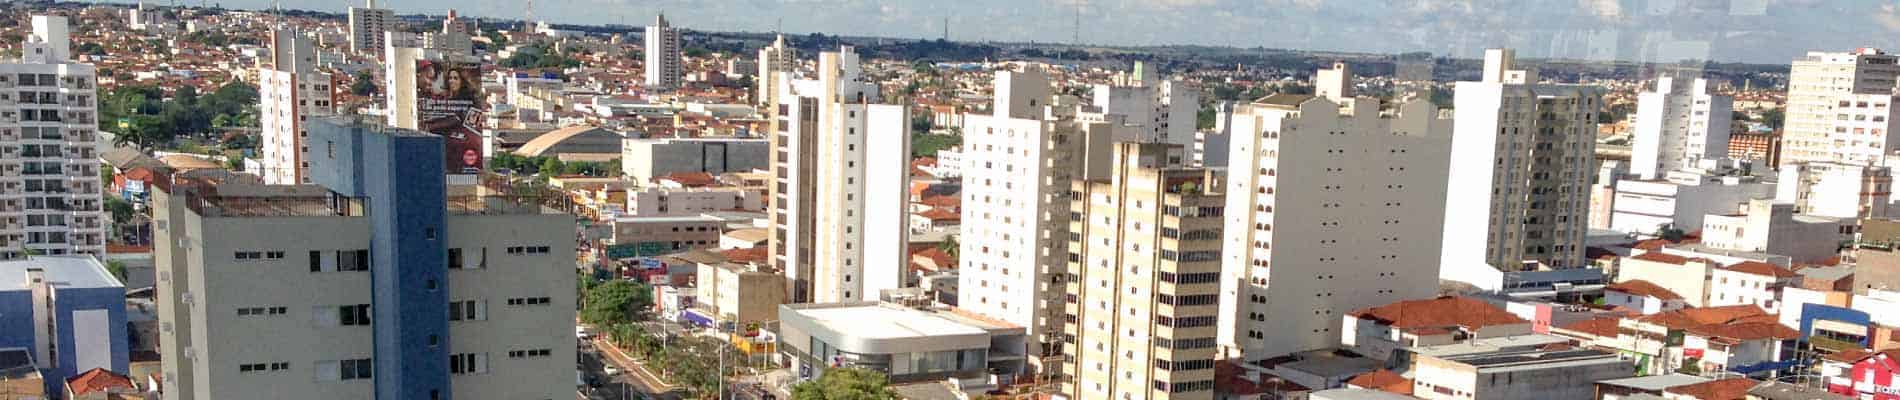 Veja ideias sobre o que fazer em São José do Rio Preto